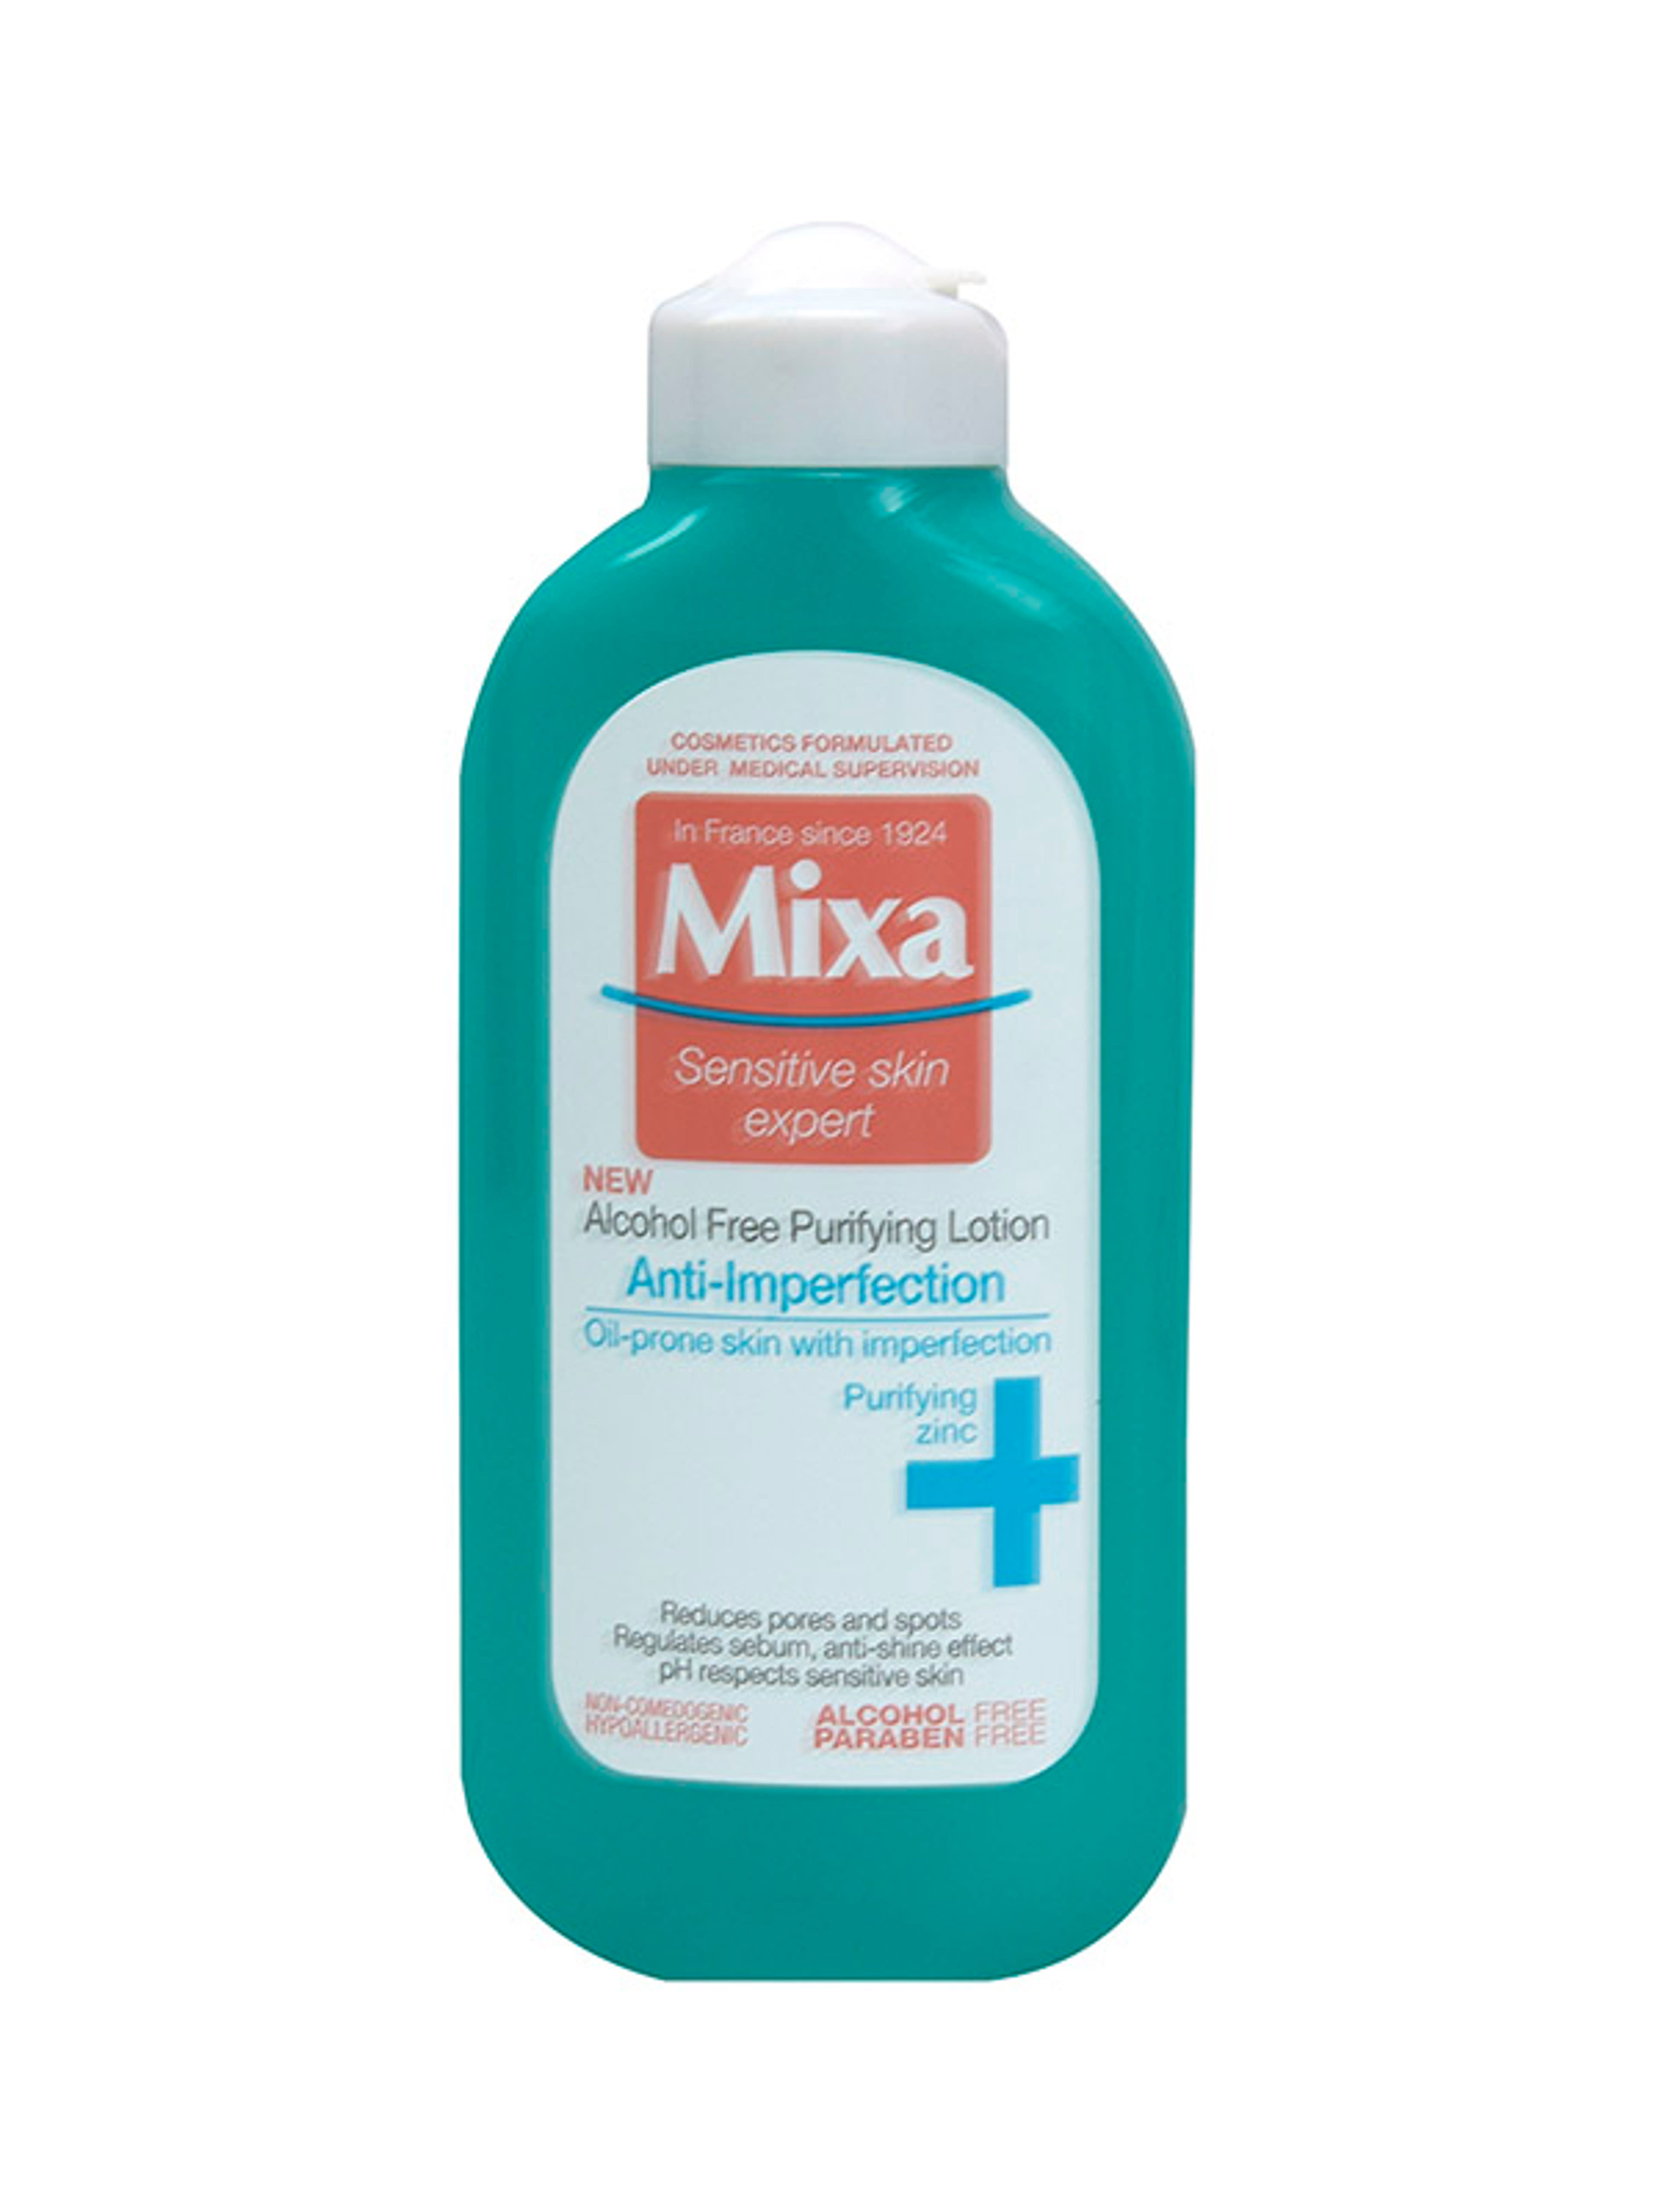 Mixa Anti-Imperfection alkoholmentes arctisztító tonik zsíros és bőrhibákra hajlamos érzékeny bőrre - 200 ml